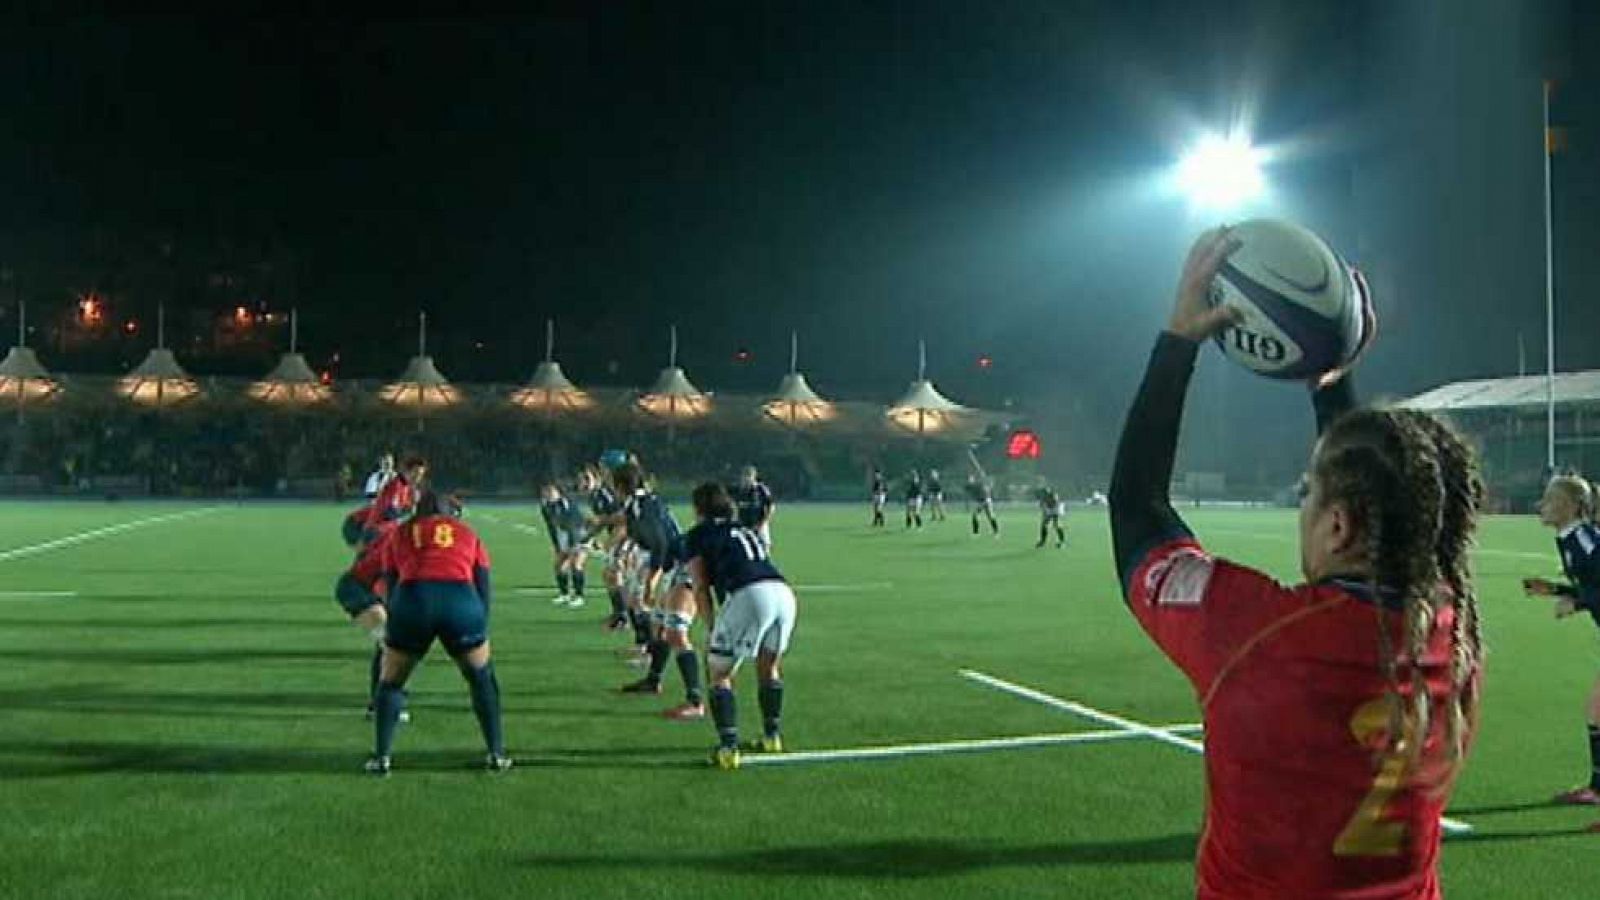 Rugby - Clasificación Campeonato del Mundo Femenino: Escocia - España